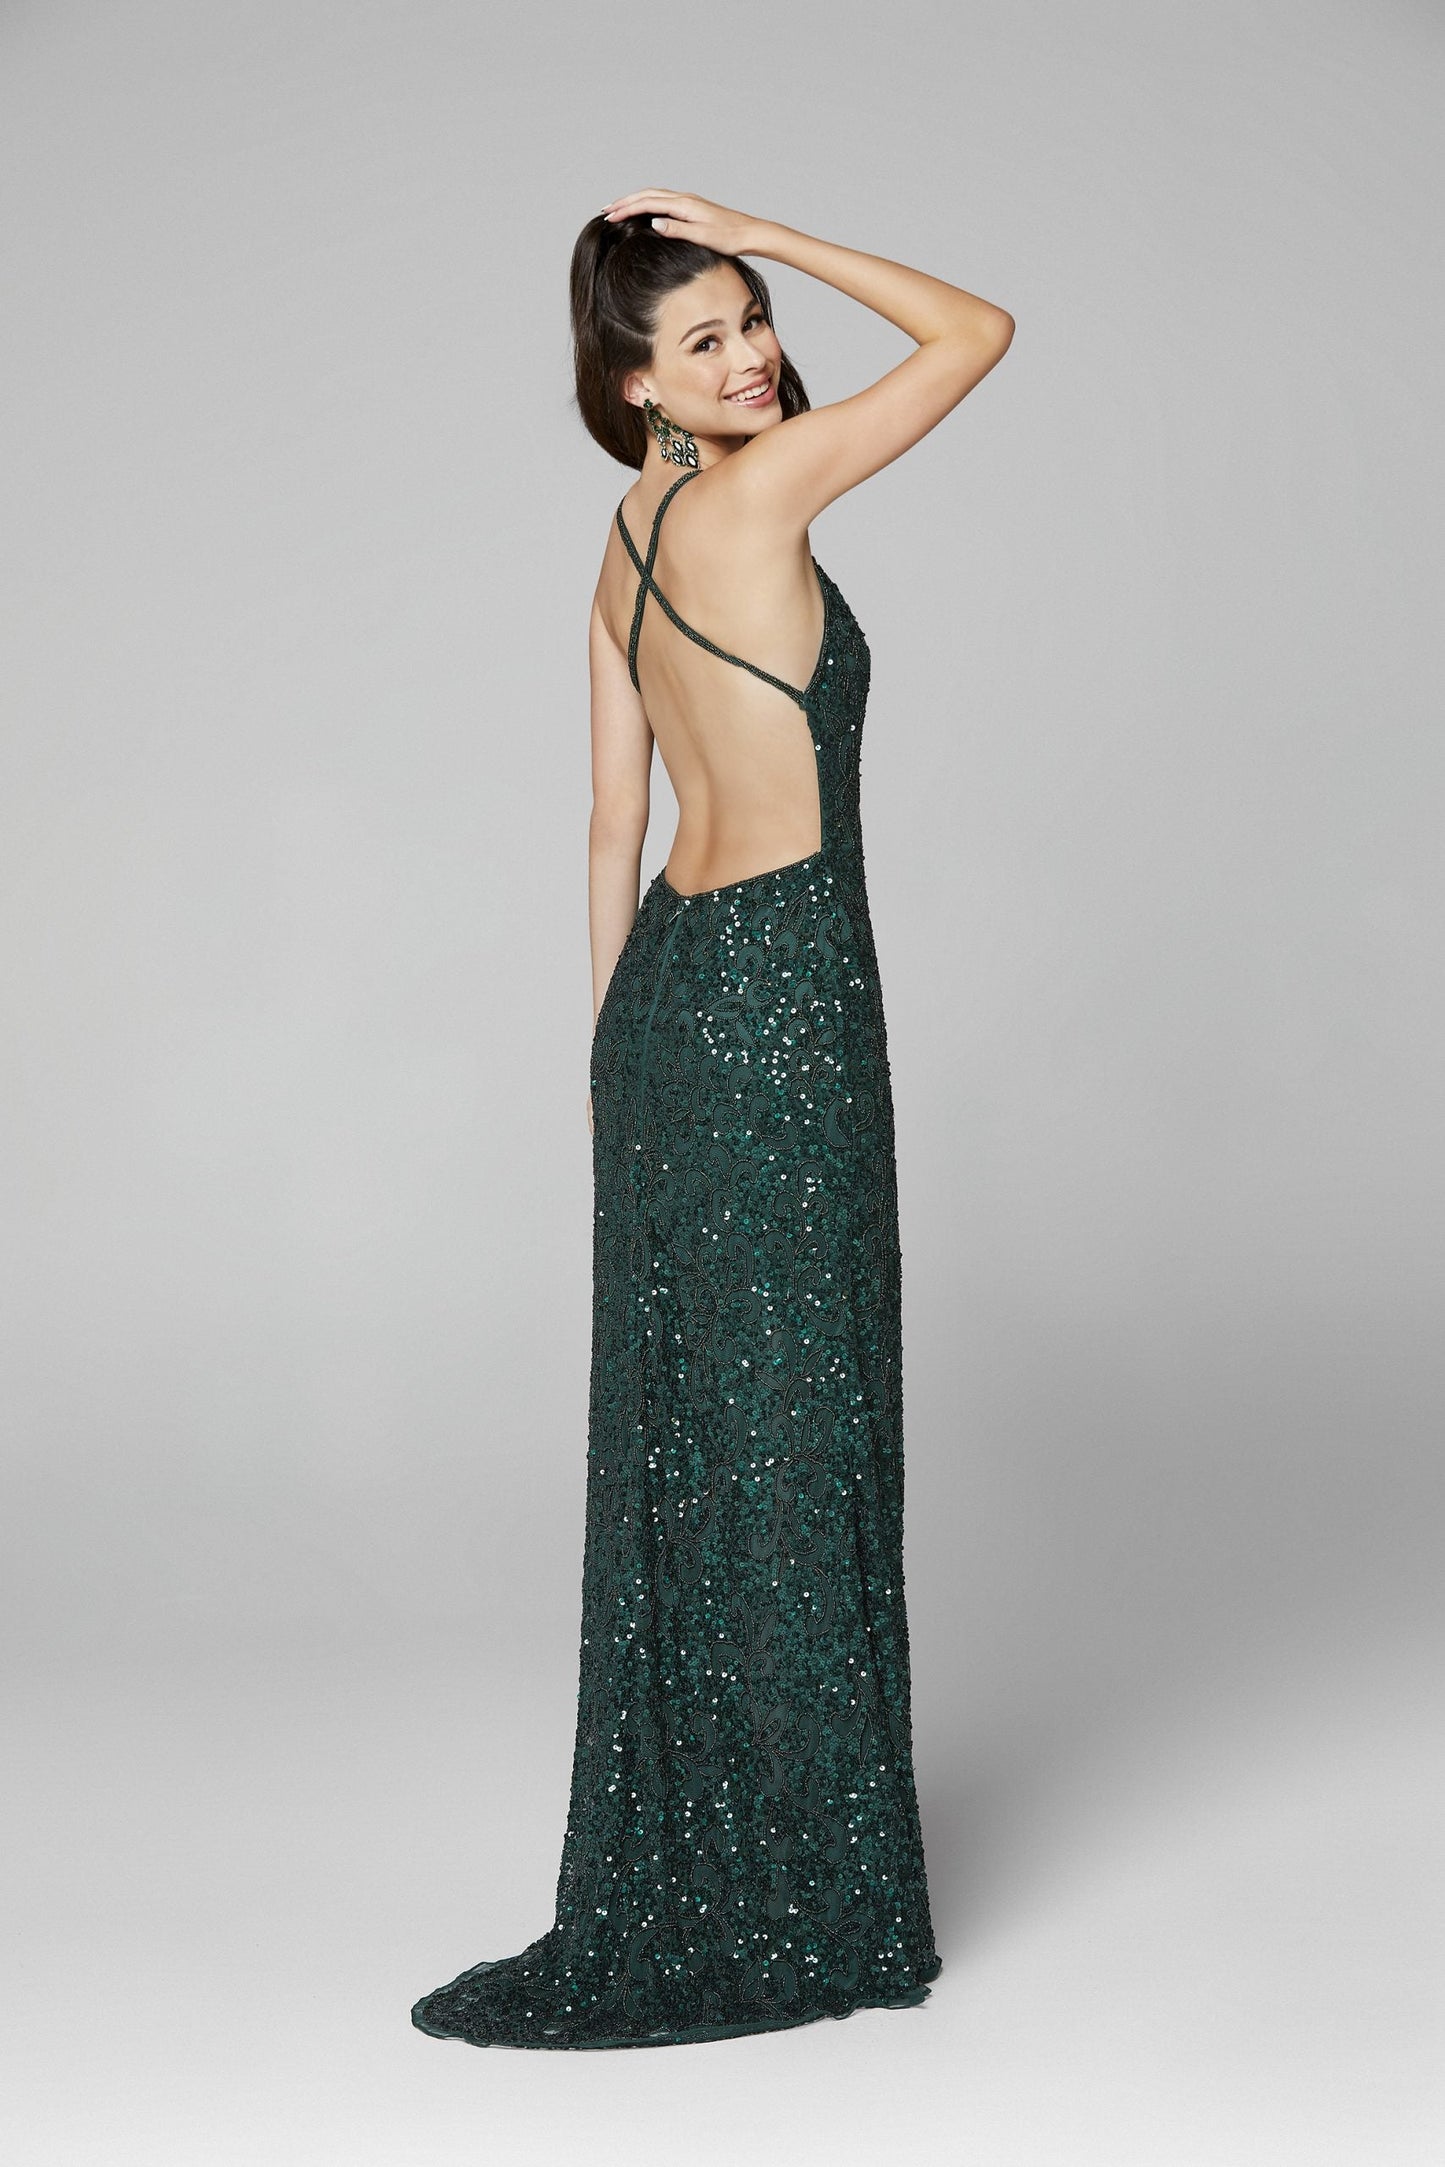 Primavera Couture 3295 Size 0, 4 Ivory Prom Dress V Neckline Sequins Backless Slit Formal Evening Gown